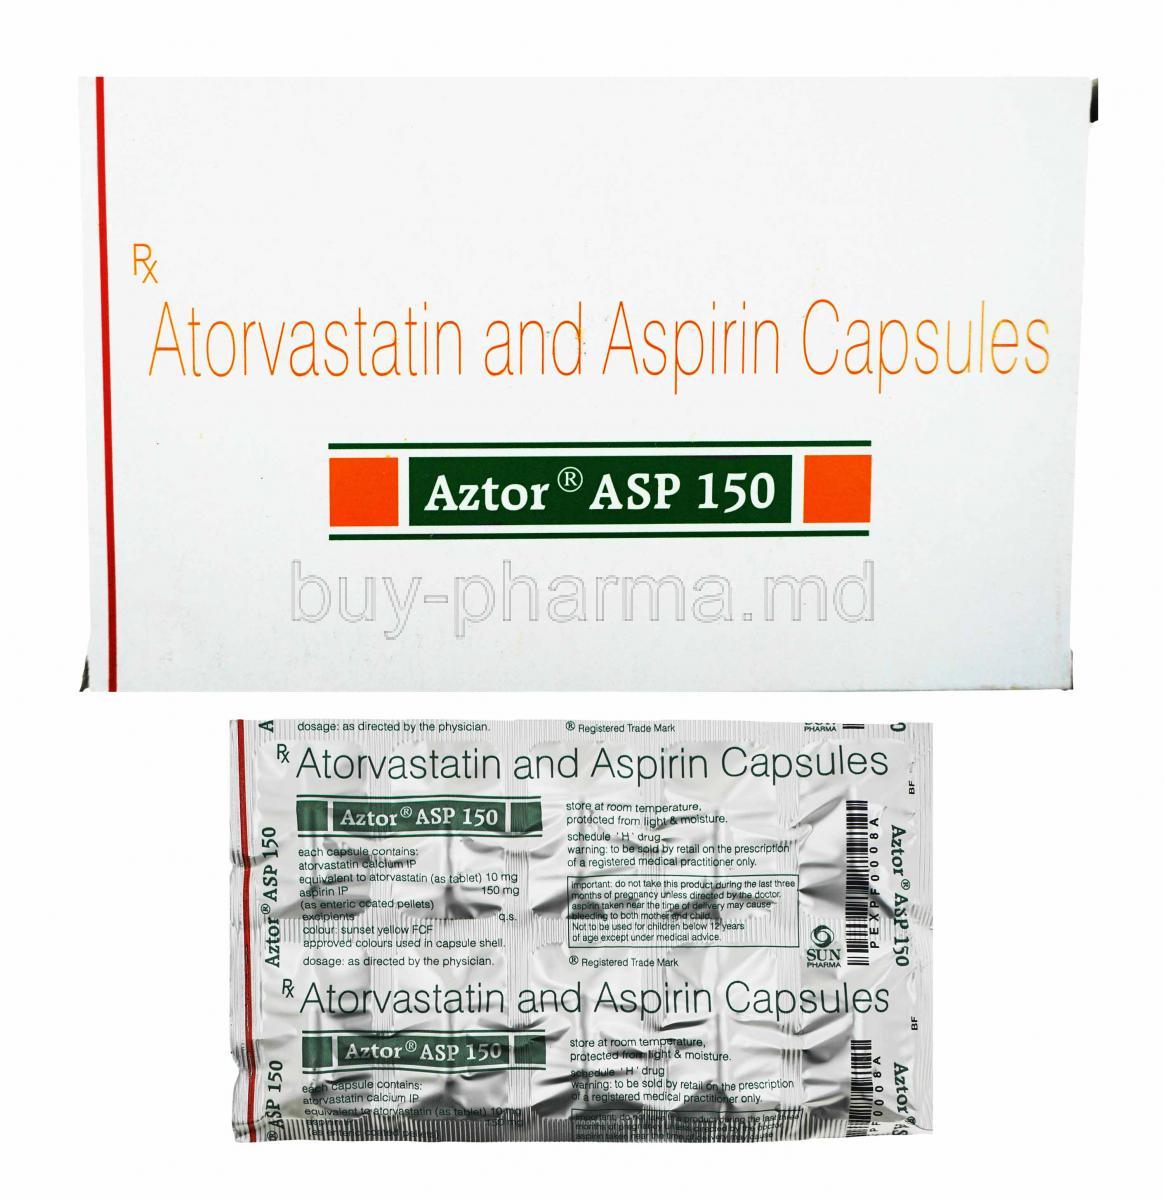 Aztor ASP, Atorvastatin 10mg and Aspirin  150mg box and capsules